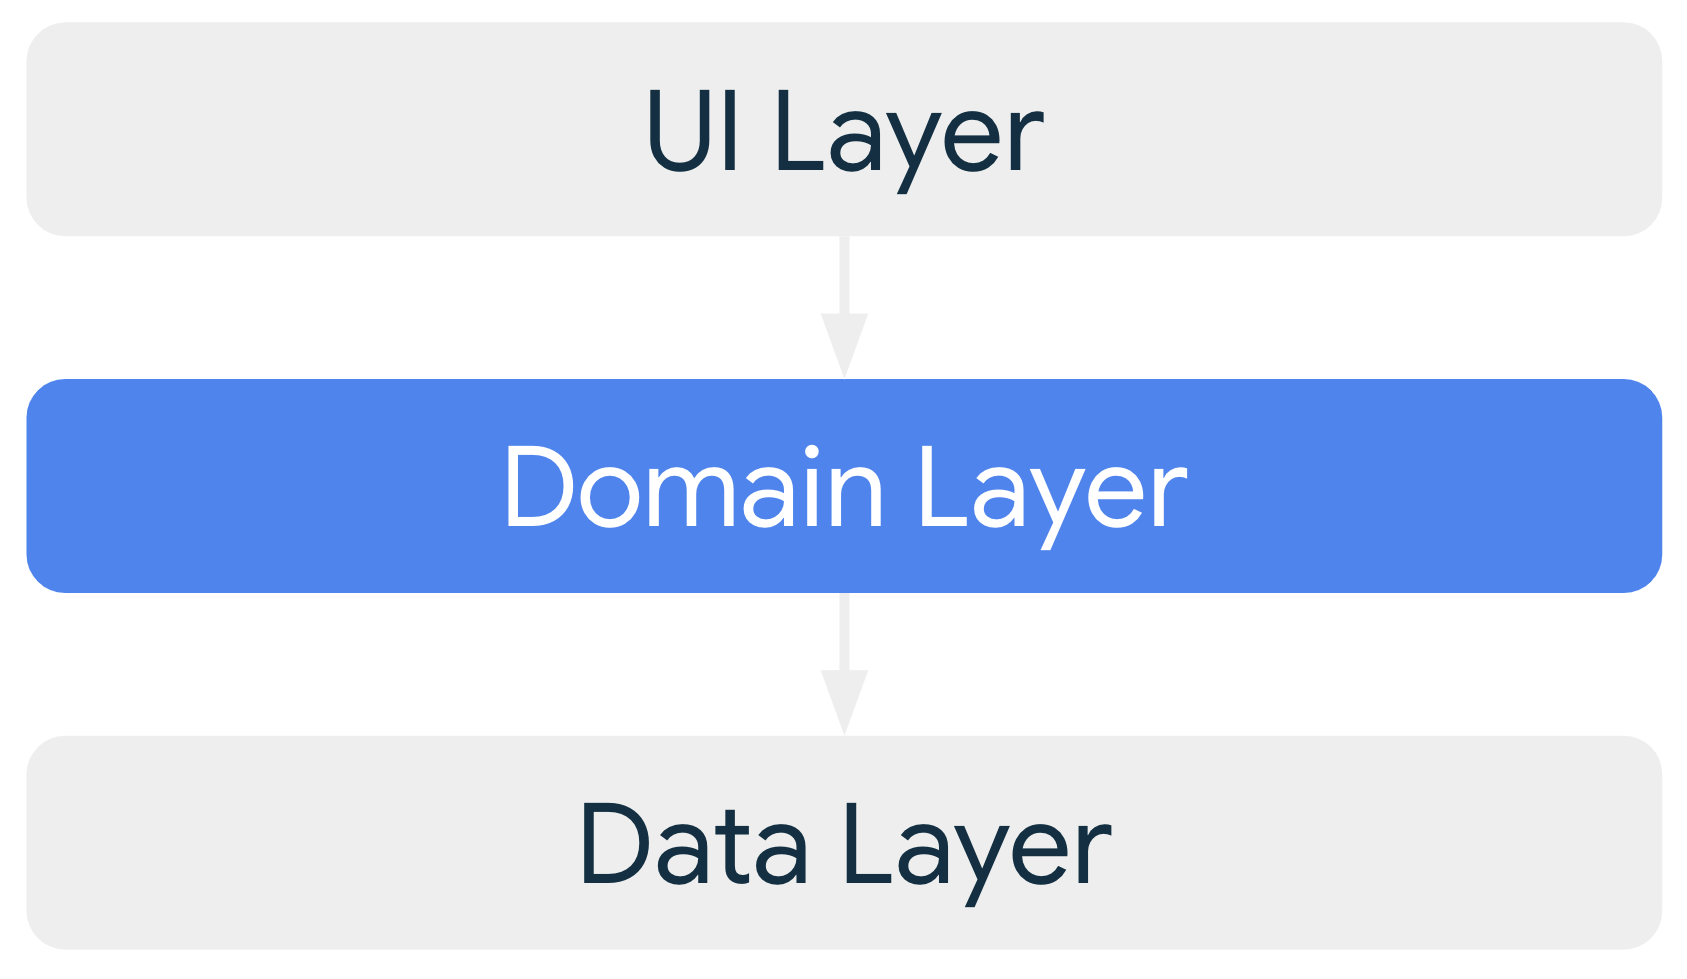 如果添加了此层，则该可选网域层会向界面层提供依赖项，而它自身则依赖于数据层。